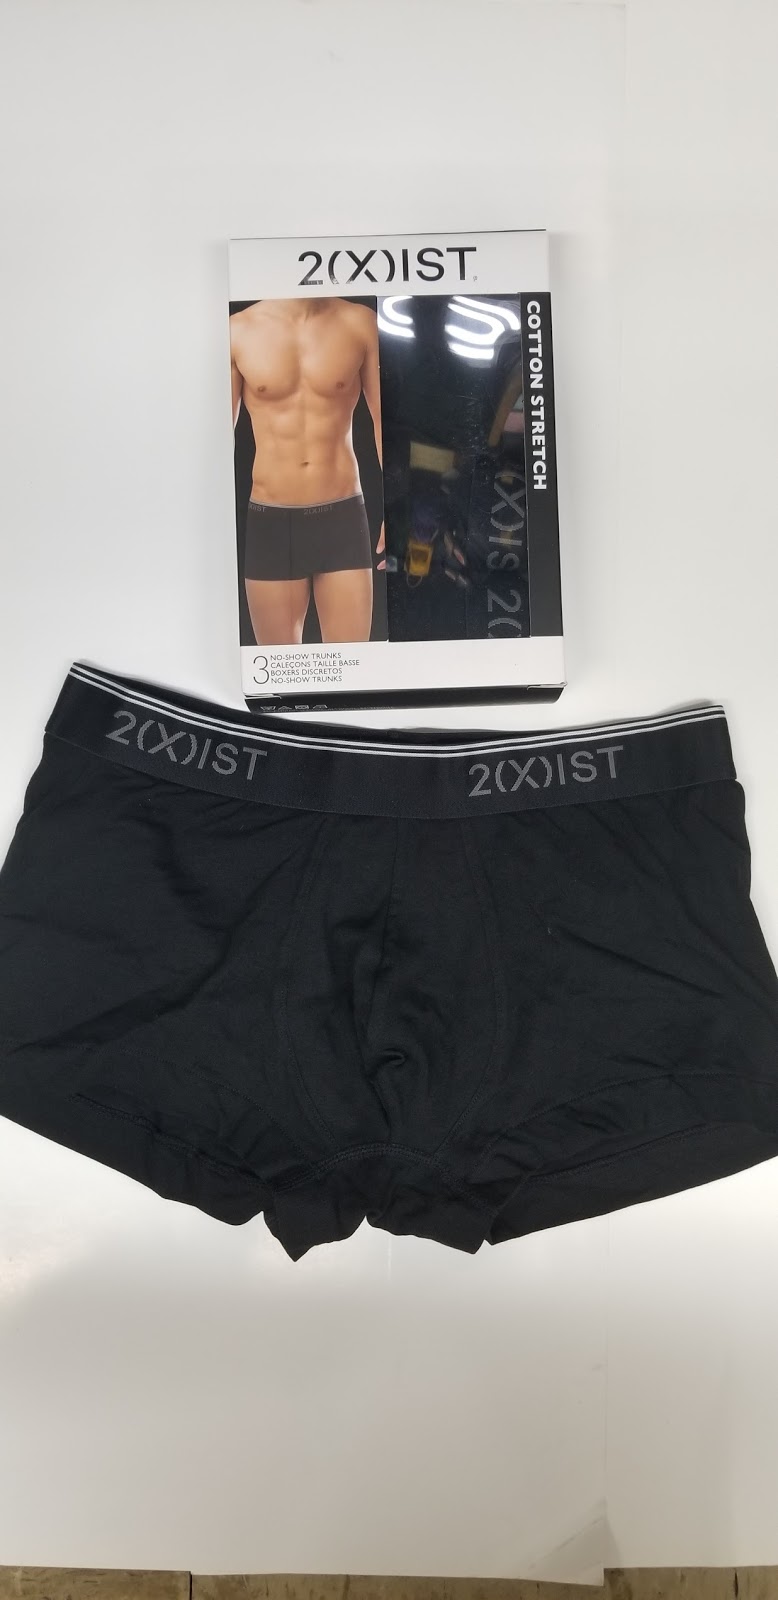 Cato's Army & Navy: New premium underwear line...2(X)IST